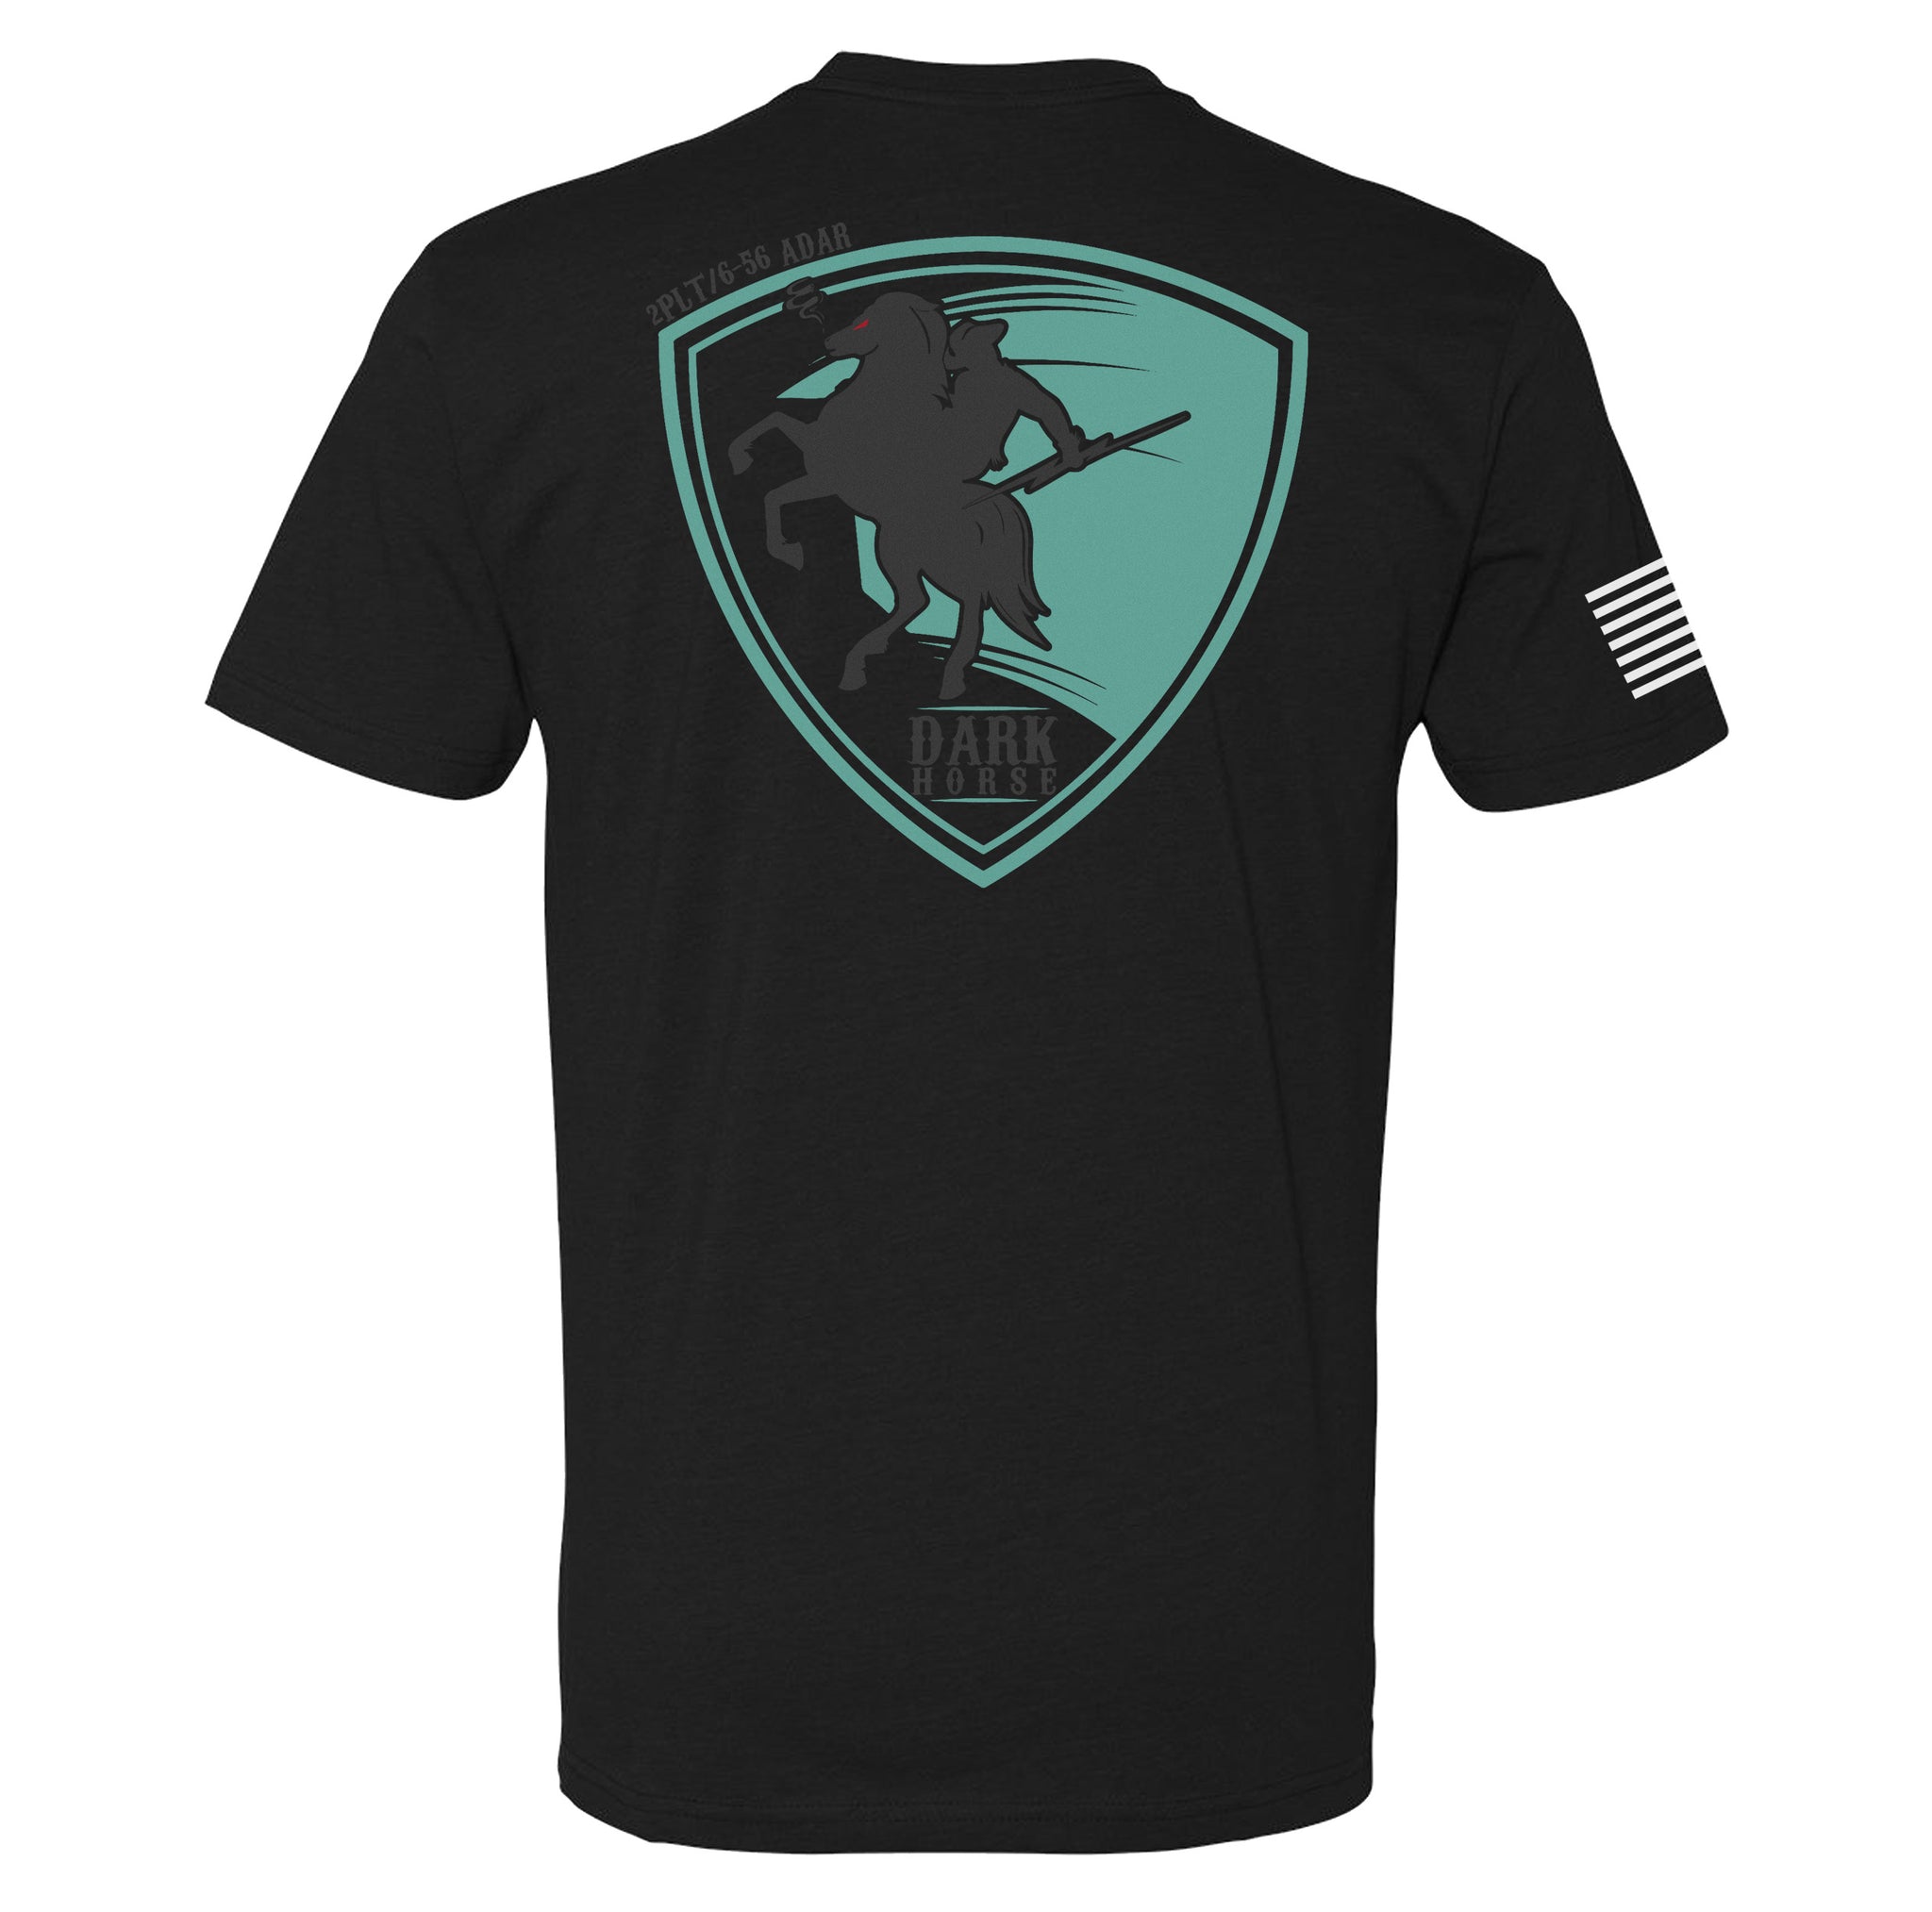 6-56 - A Battery Dark Horse PT Shirt